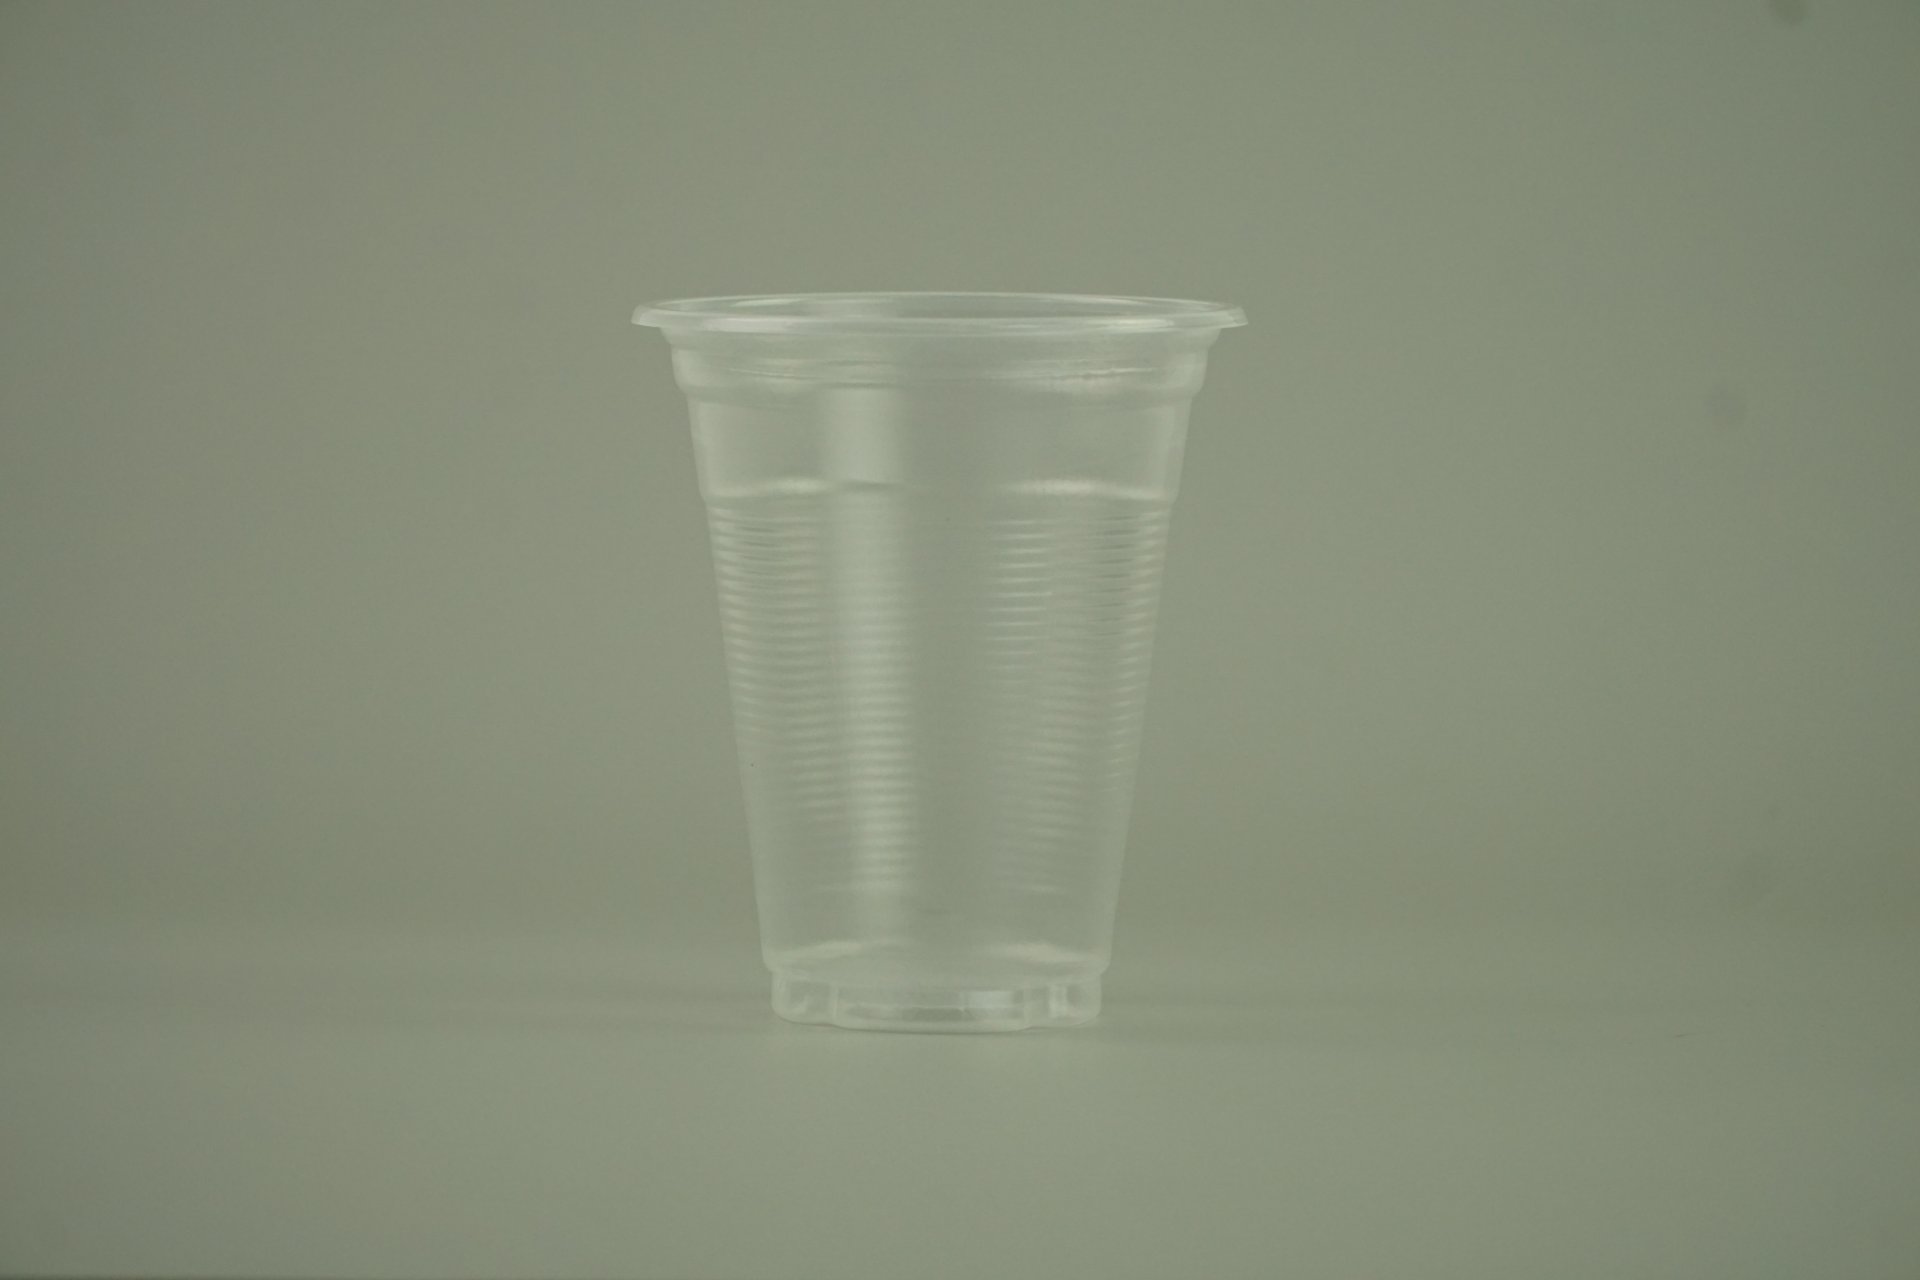 แก้วน้ำ 10 ออนซ์ แก้วพลาสติก PP ลอนใส รุ่นประหยัด  ขนาด 8.5x10x4.5 cm.